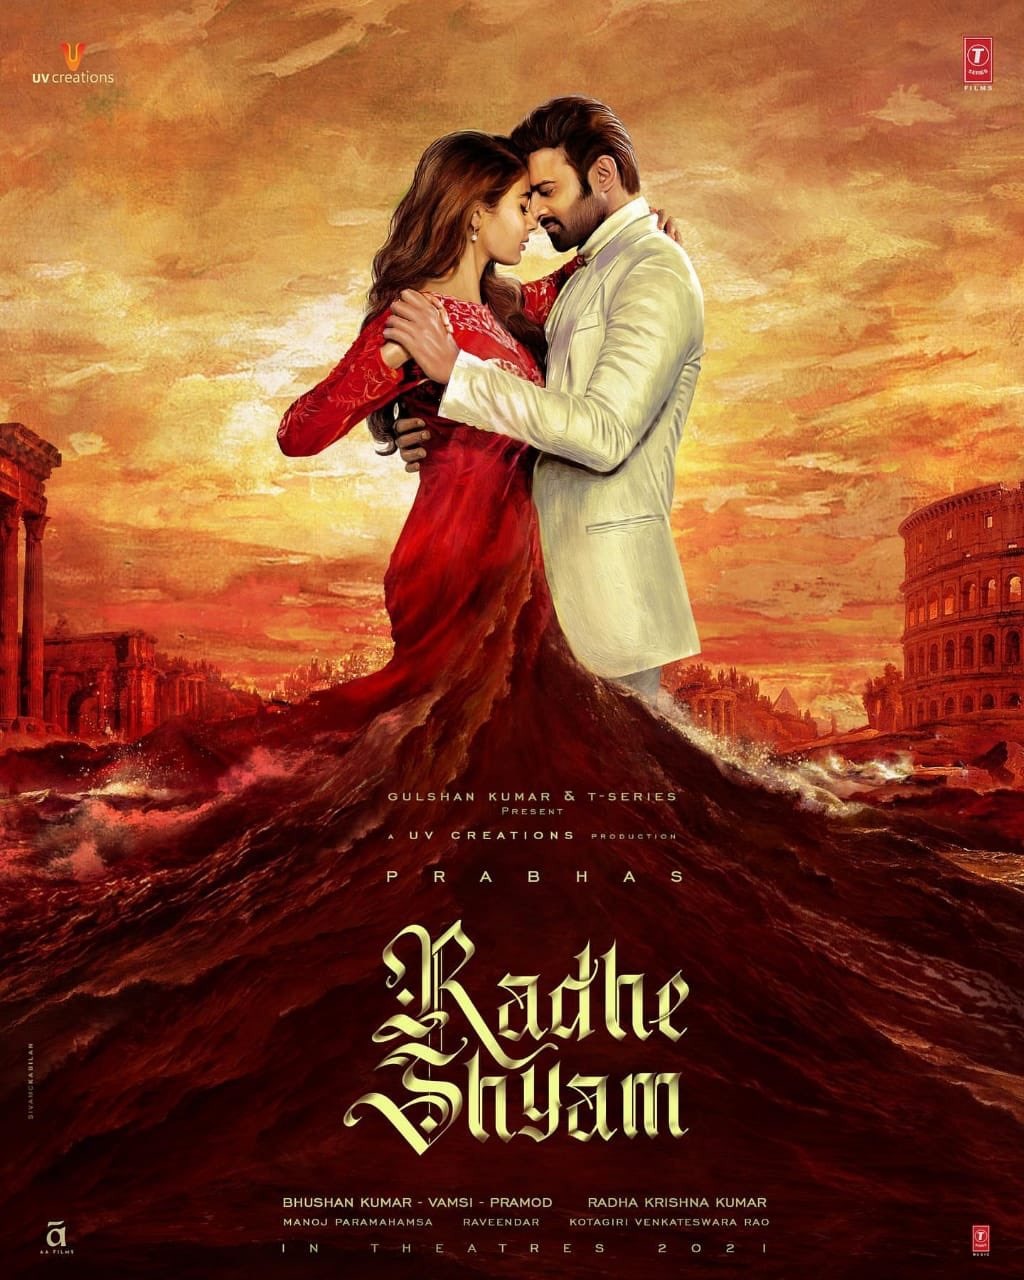 Extra Large Movie Poster Image for Radhe Shyam 